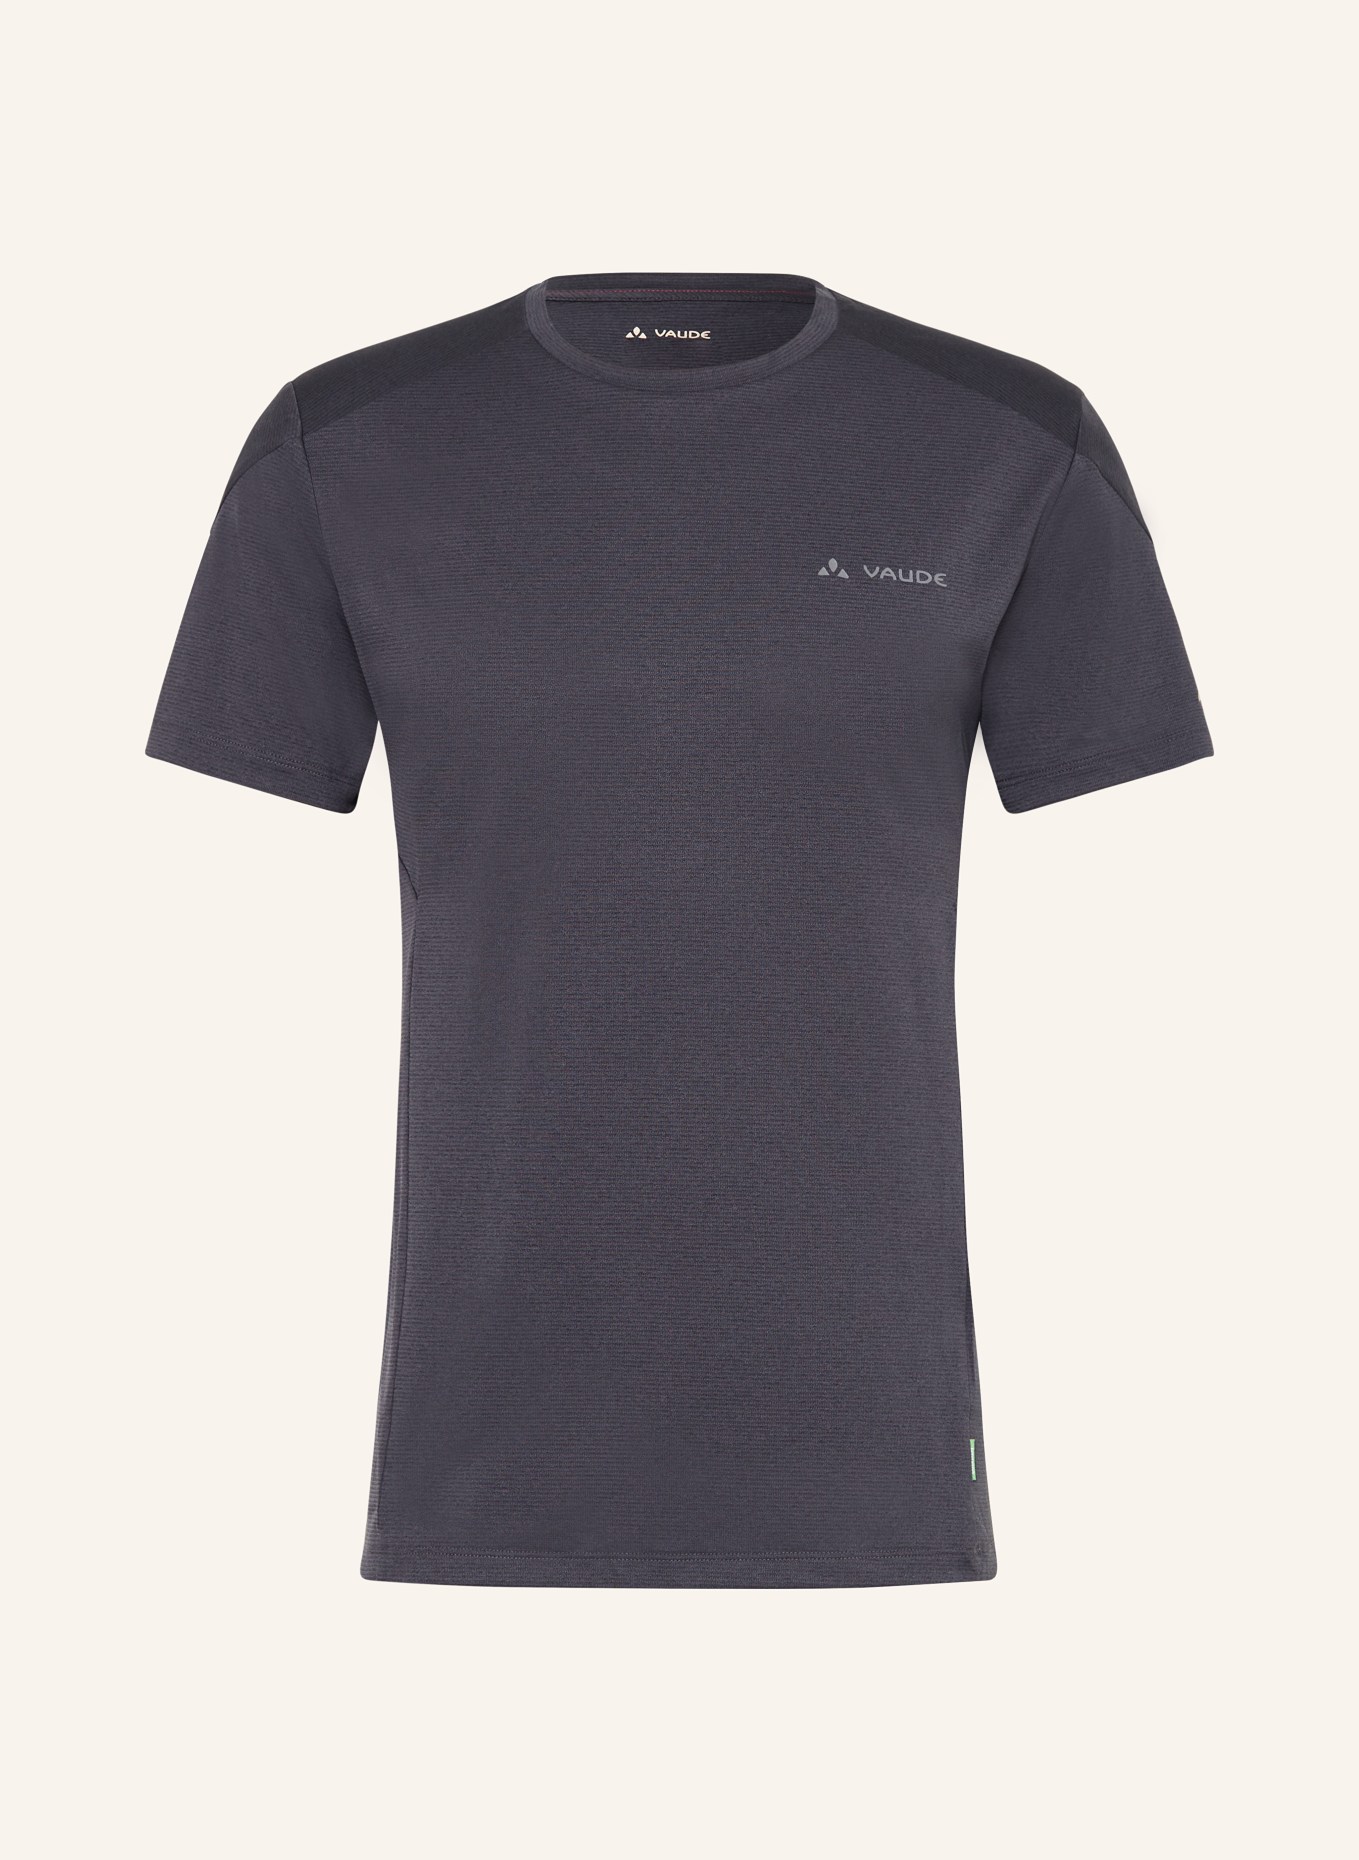 VAUDE T-Shirt ELOPE, Farbe: DUNKELGRAU (Bild 1)